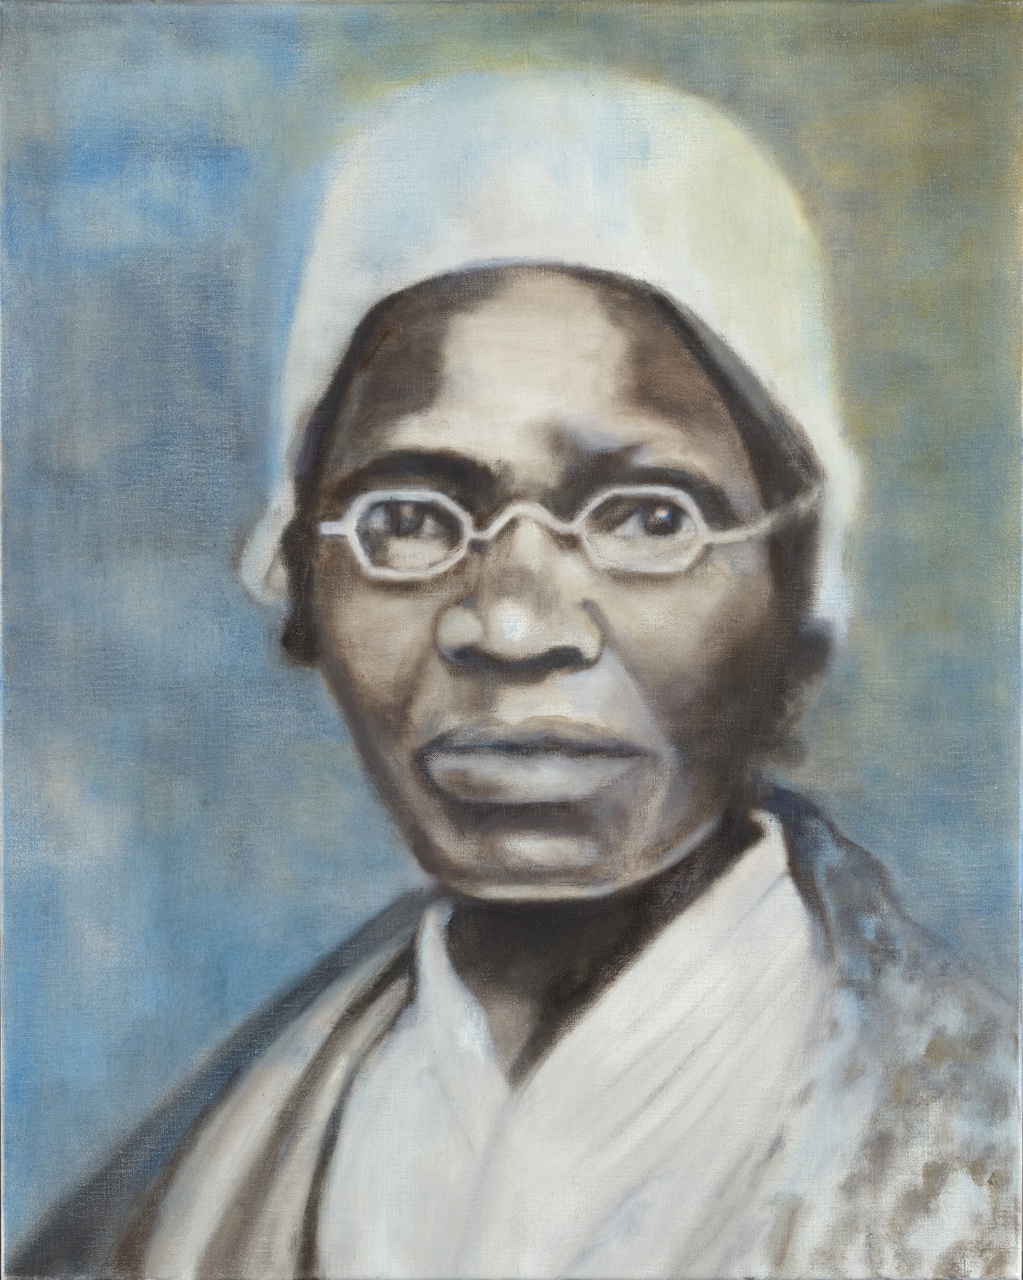 2/2 - Aflevering twee van Kunst Centraal gaat over dit portret van Sojourner Truth, geschilderd door Iris Kensmil in 2018.